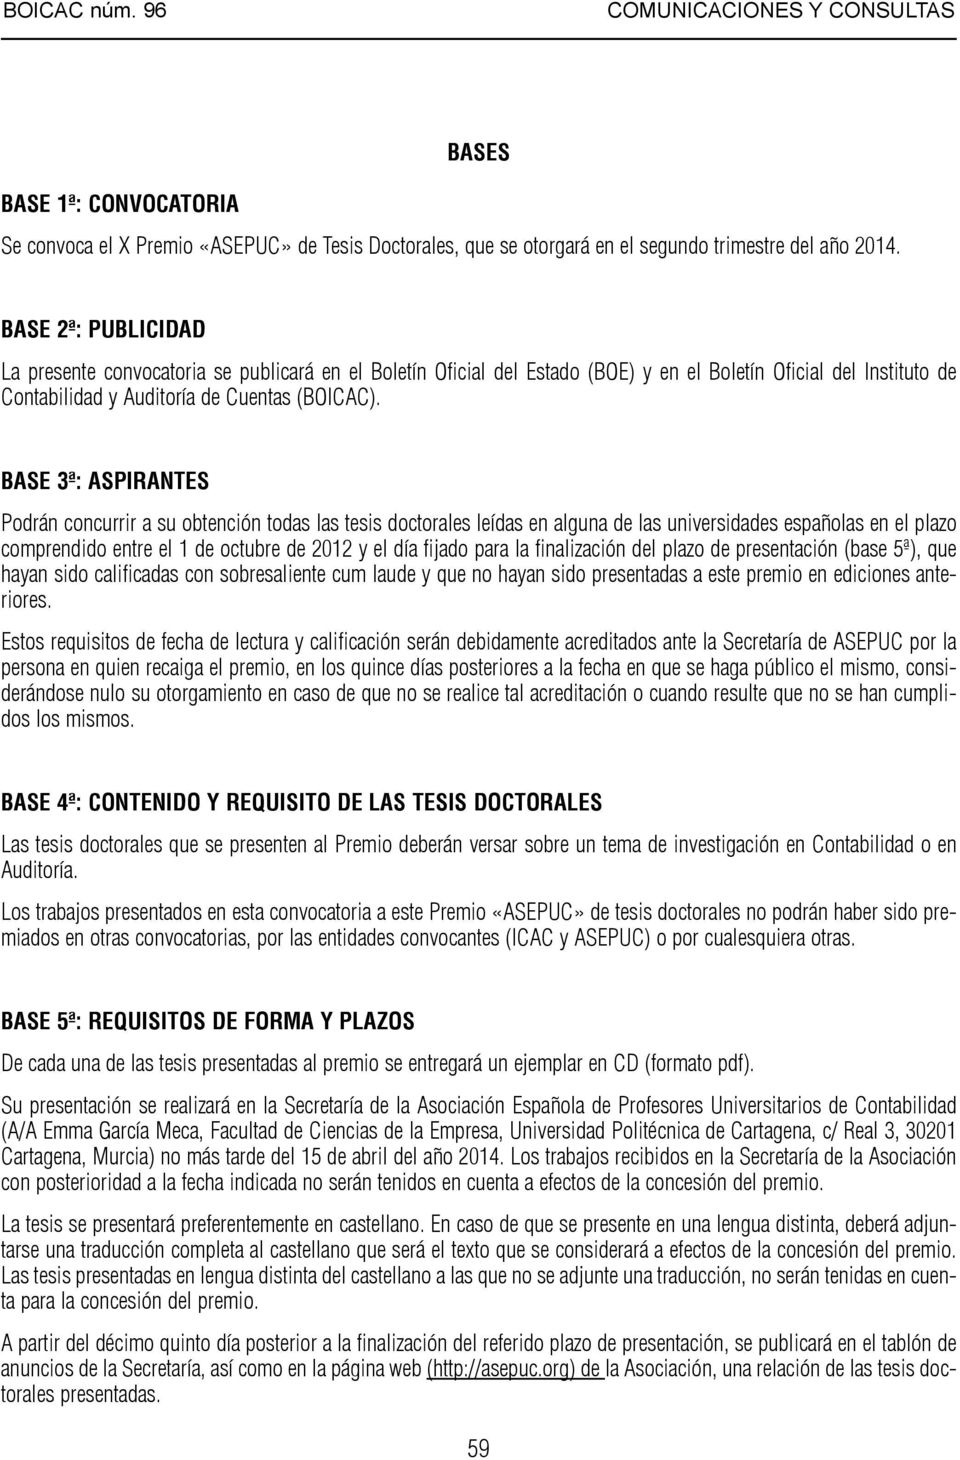 BASE 3ª: ASPIRANTES Podrán concurrir a su obtención todas las tesis doctorales leídas en alguna de las universidades españolas en el plazo comprendido entre el 1 de octubre de 2012 y el día fijado